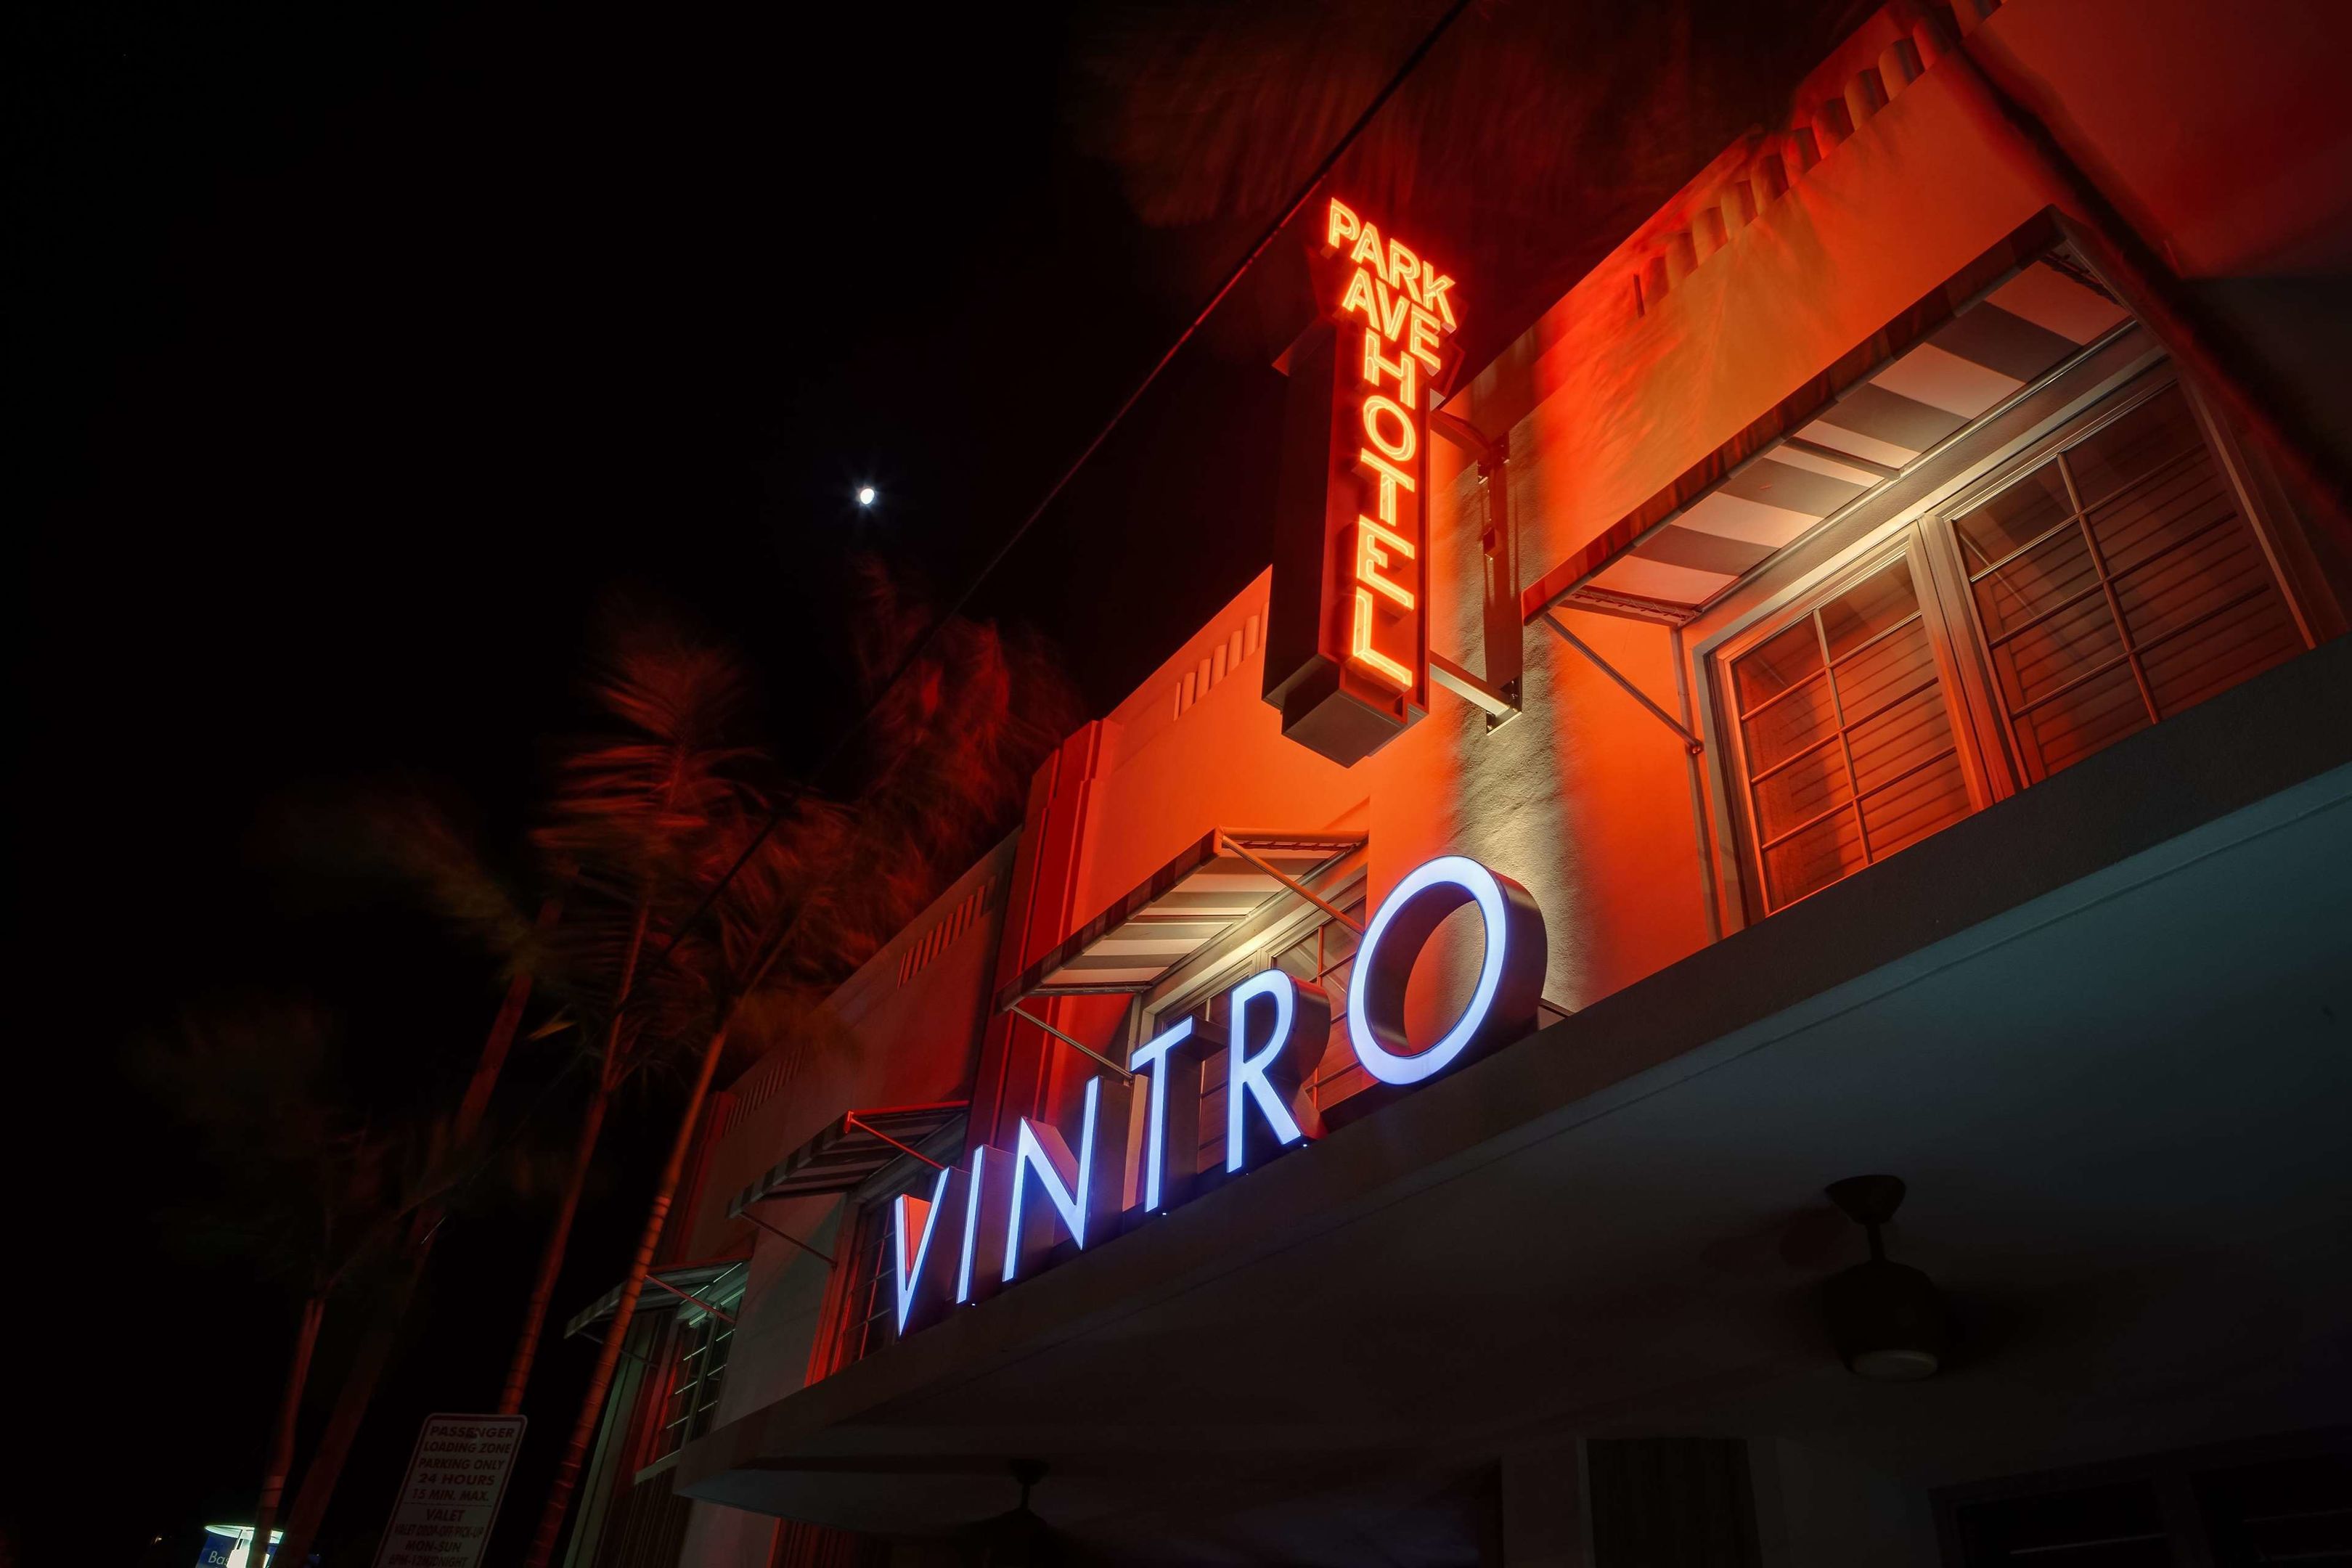 The Vintro Hotel